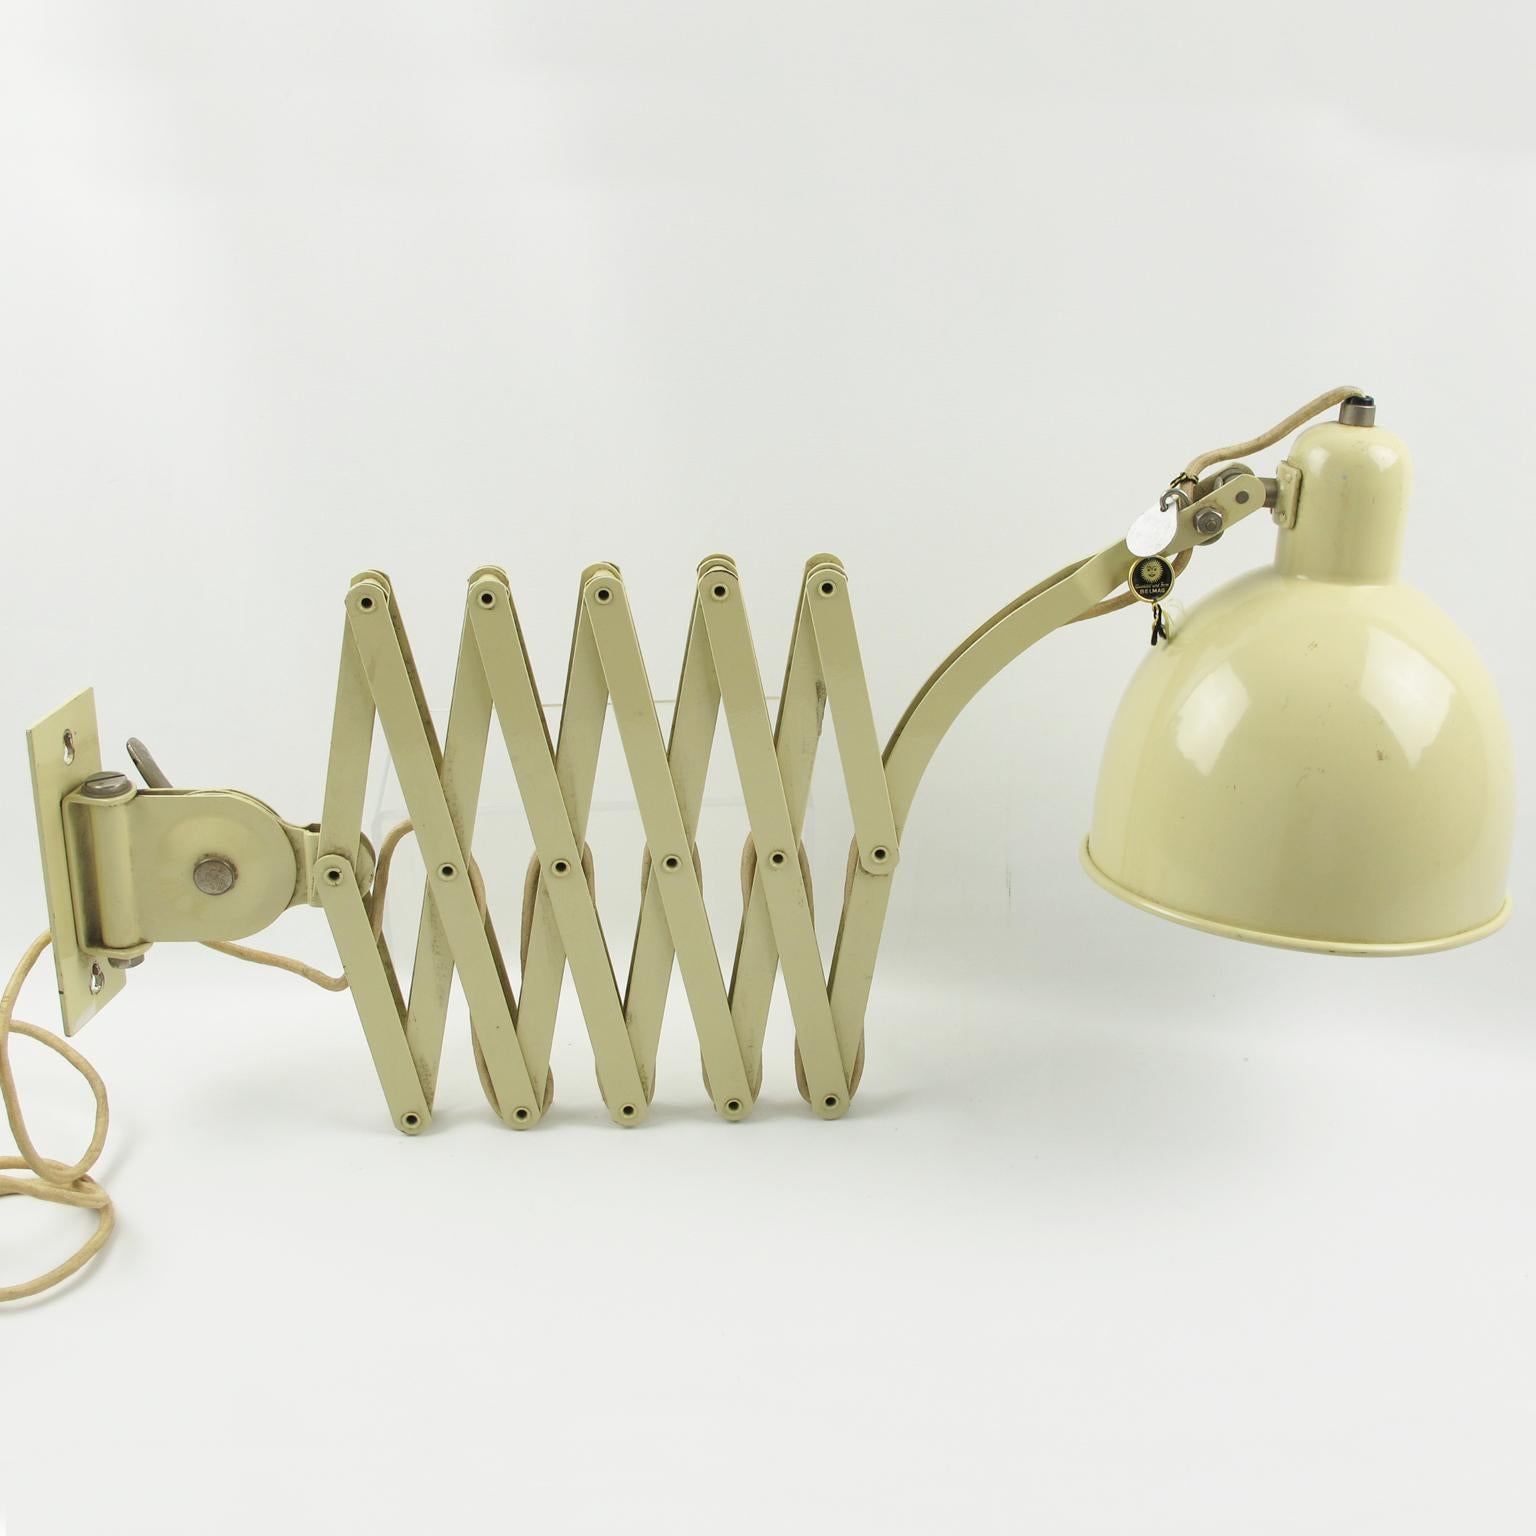 Bauhaus Christian Dell for Kaiser Idell Scissor Metal Wall Lamp Sconce, 1930s For Sale